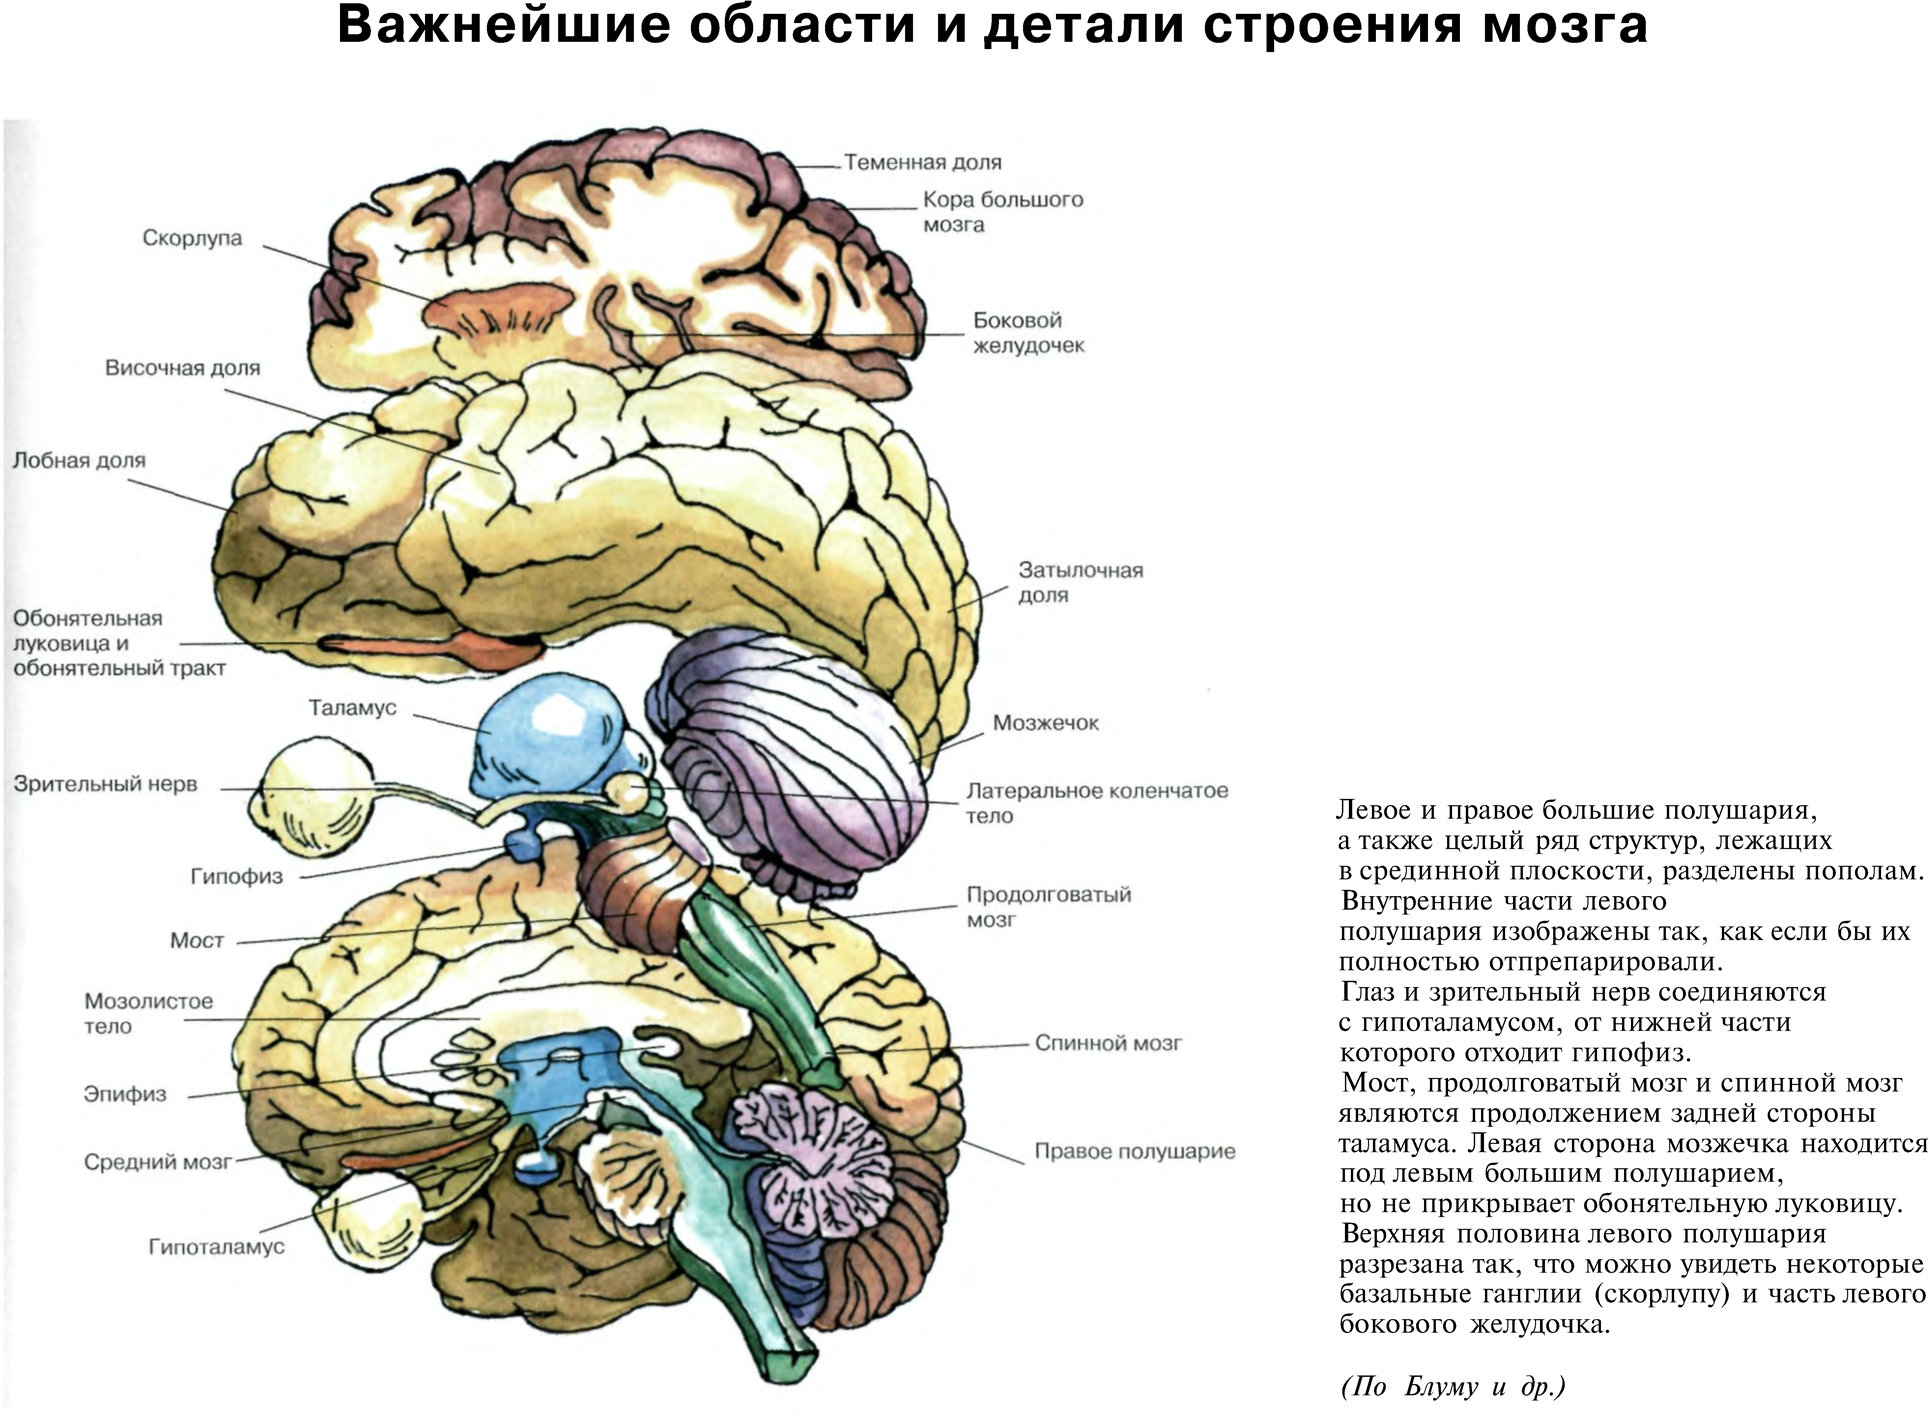 Важнейшие области и детали строения мозга